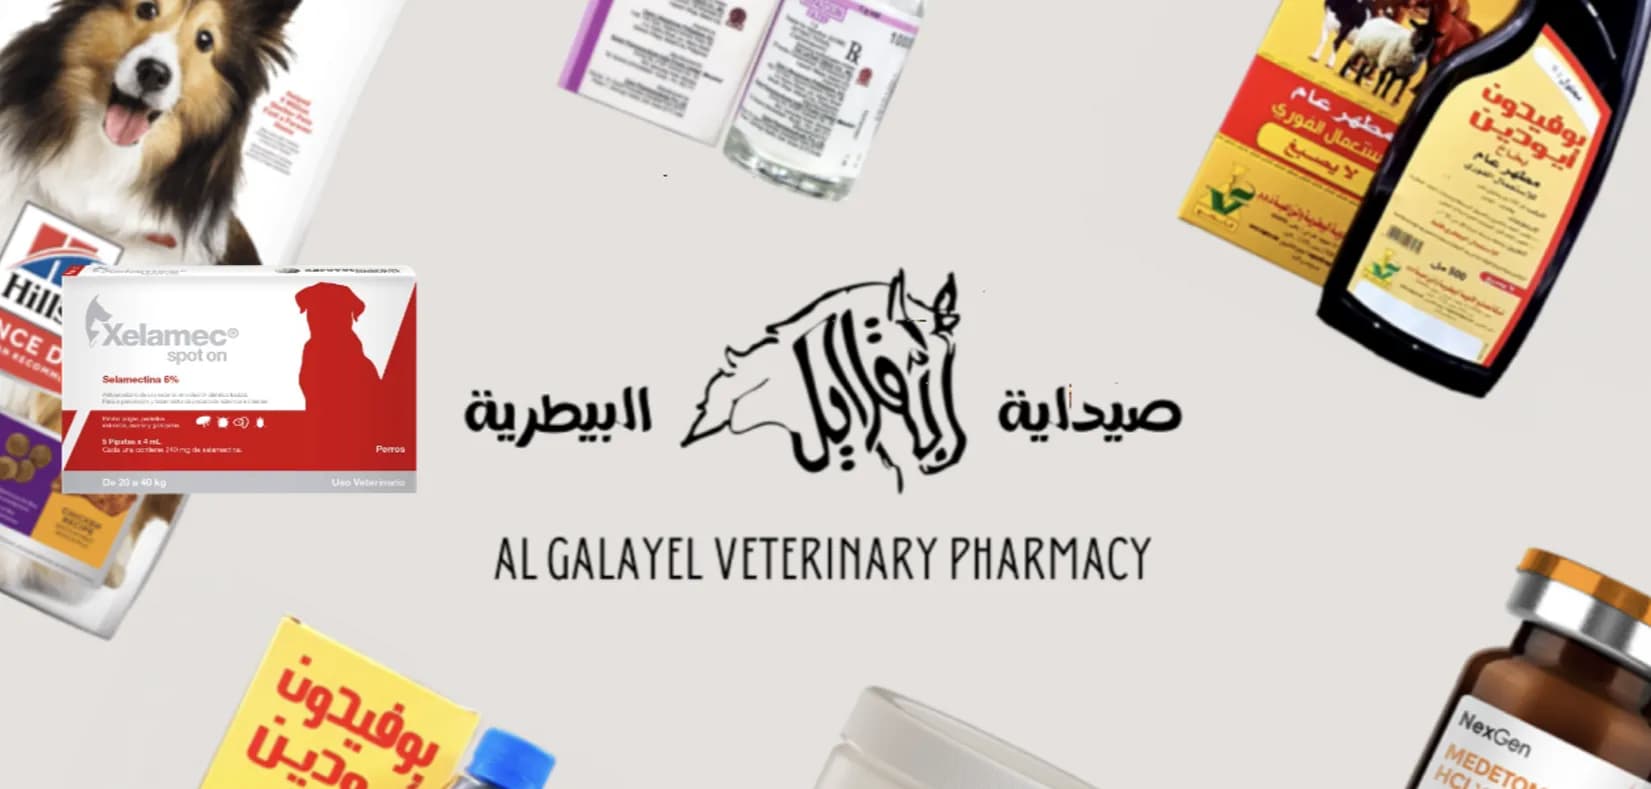 Al Galayel Veterinary Pharmacy